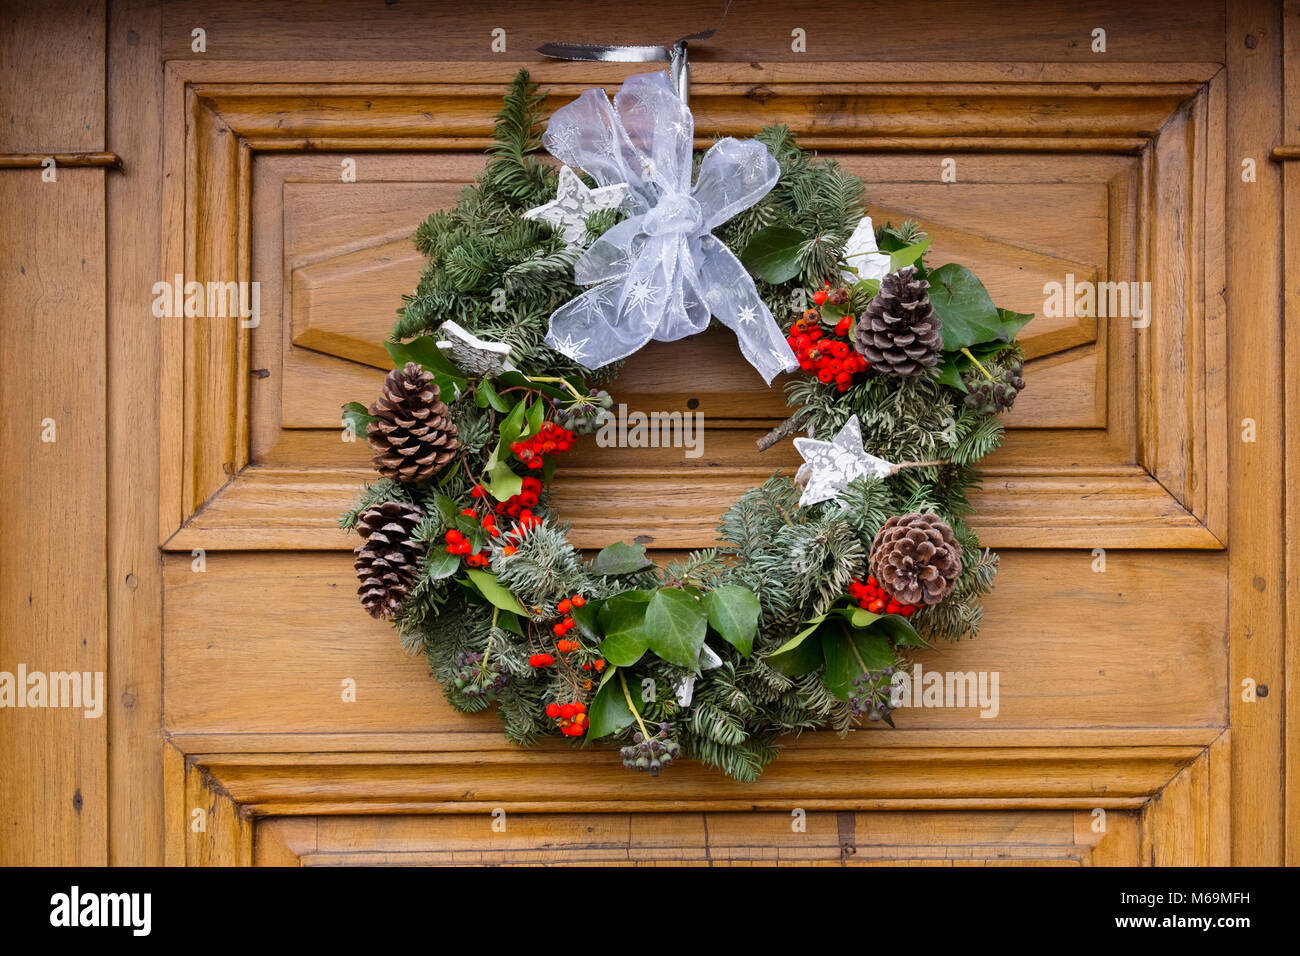 Weihnachten Dekoration an der Tür eines Hauses, troinex. Genève Suisse.  Genf. Die Schweiz. Europa Stockfotografie - Alamy